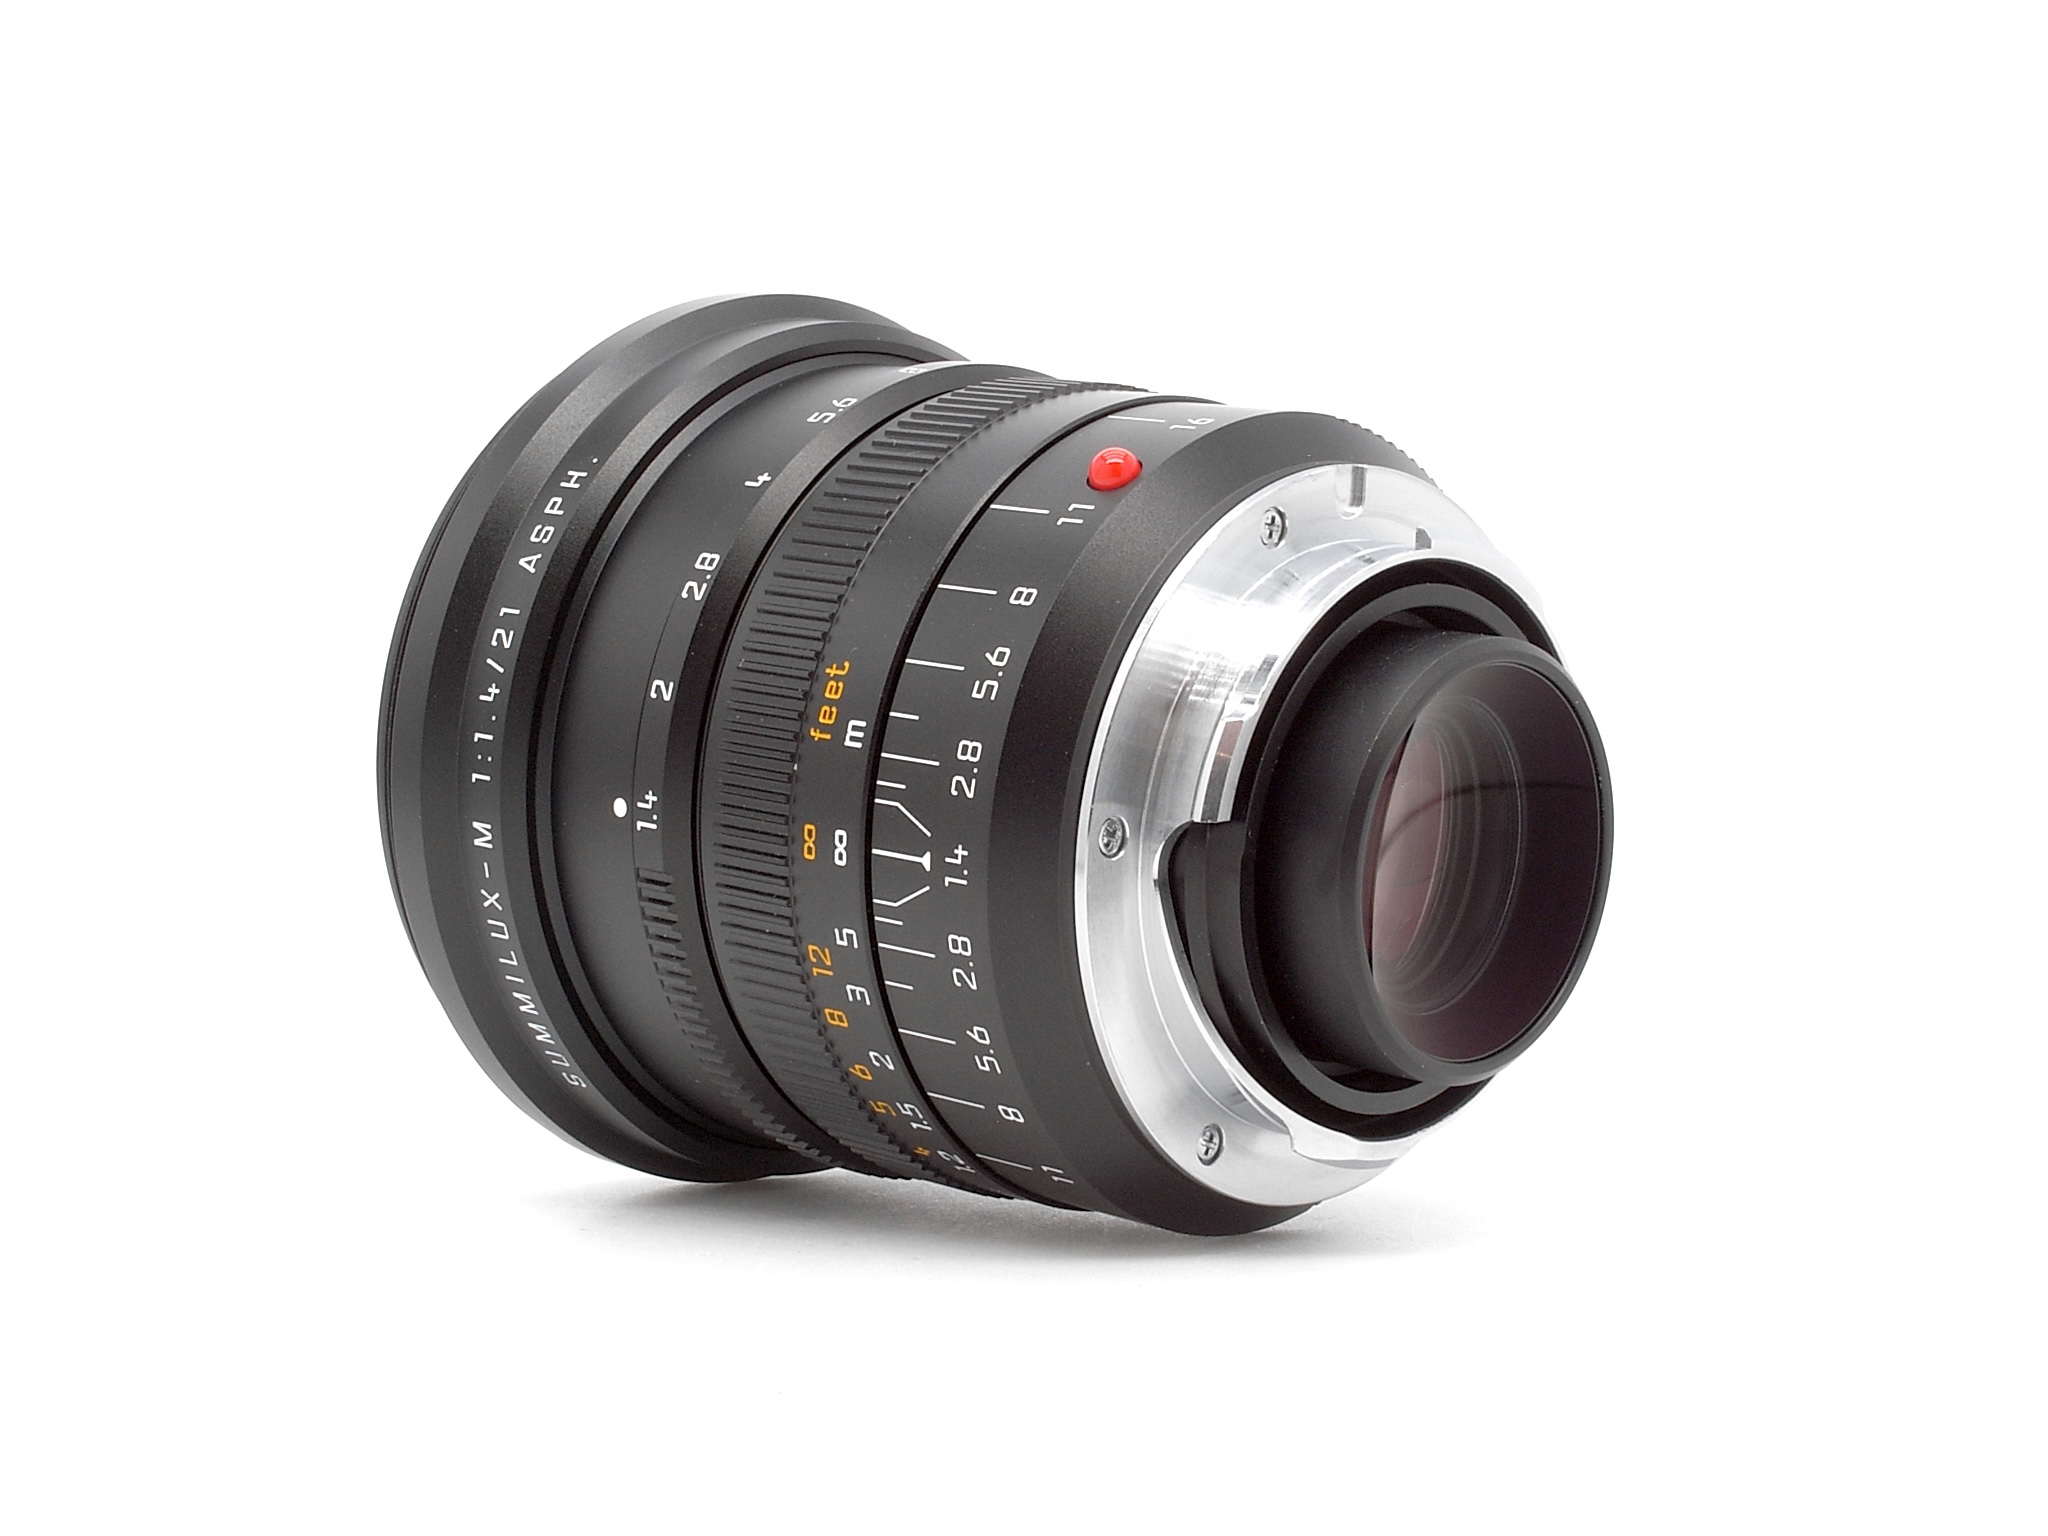 Leica Summilux-M 1.4/21mm ASPH. schwarz 6Bit